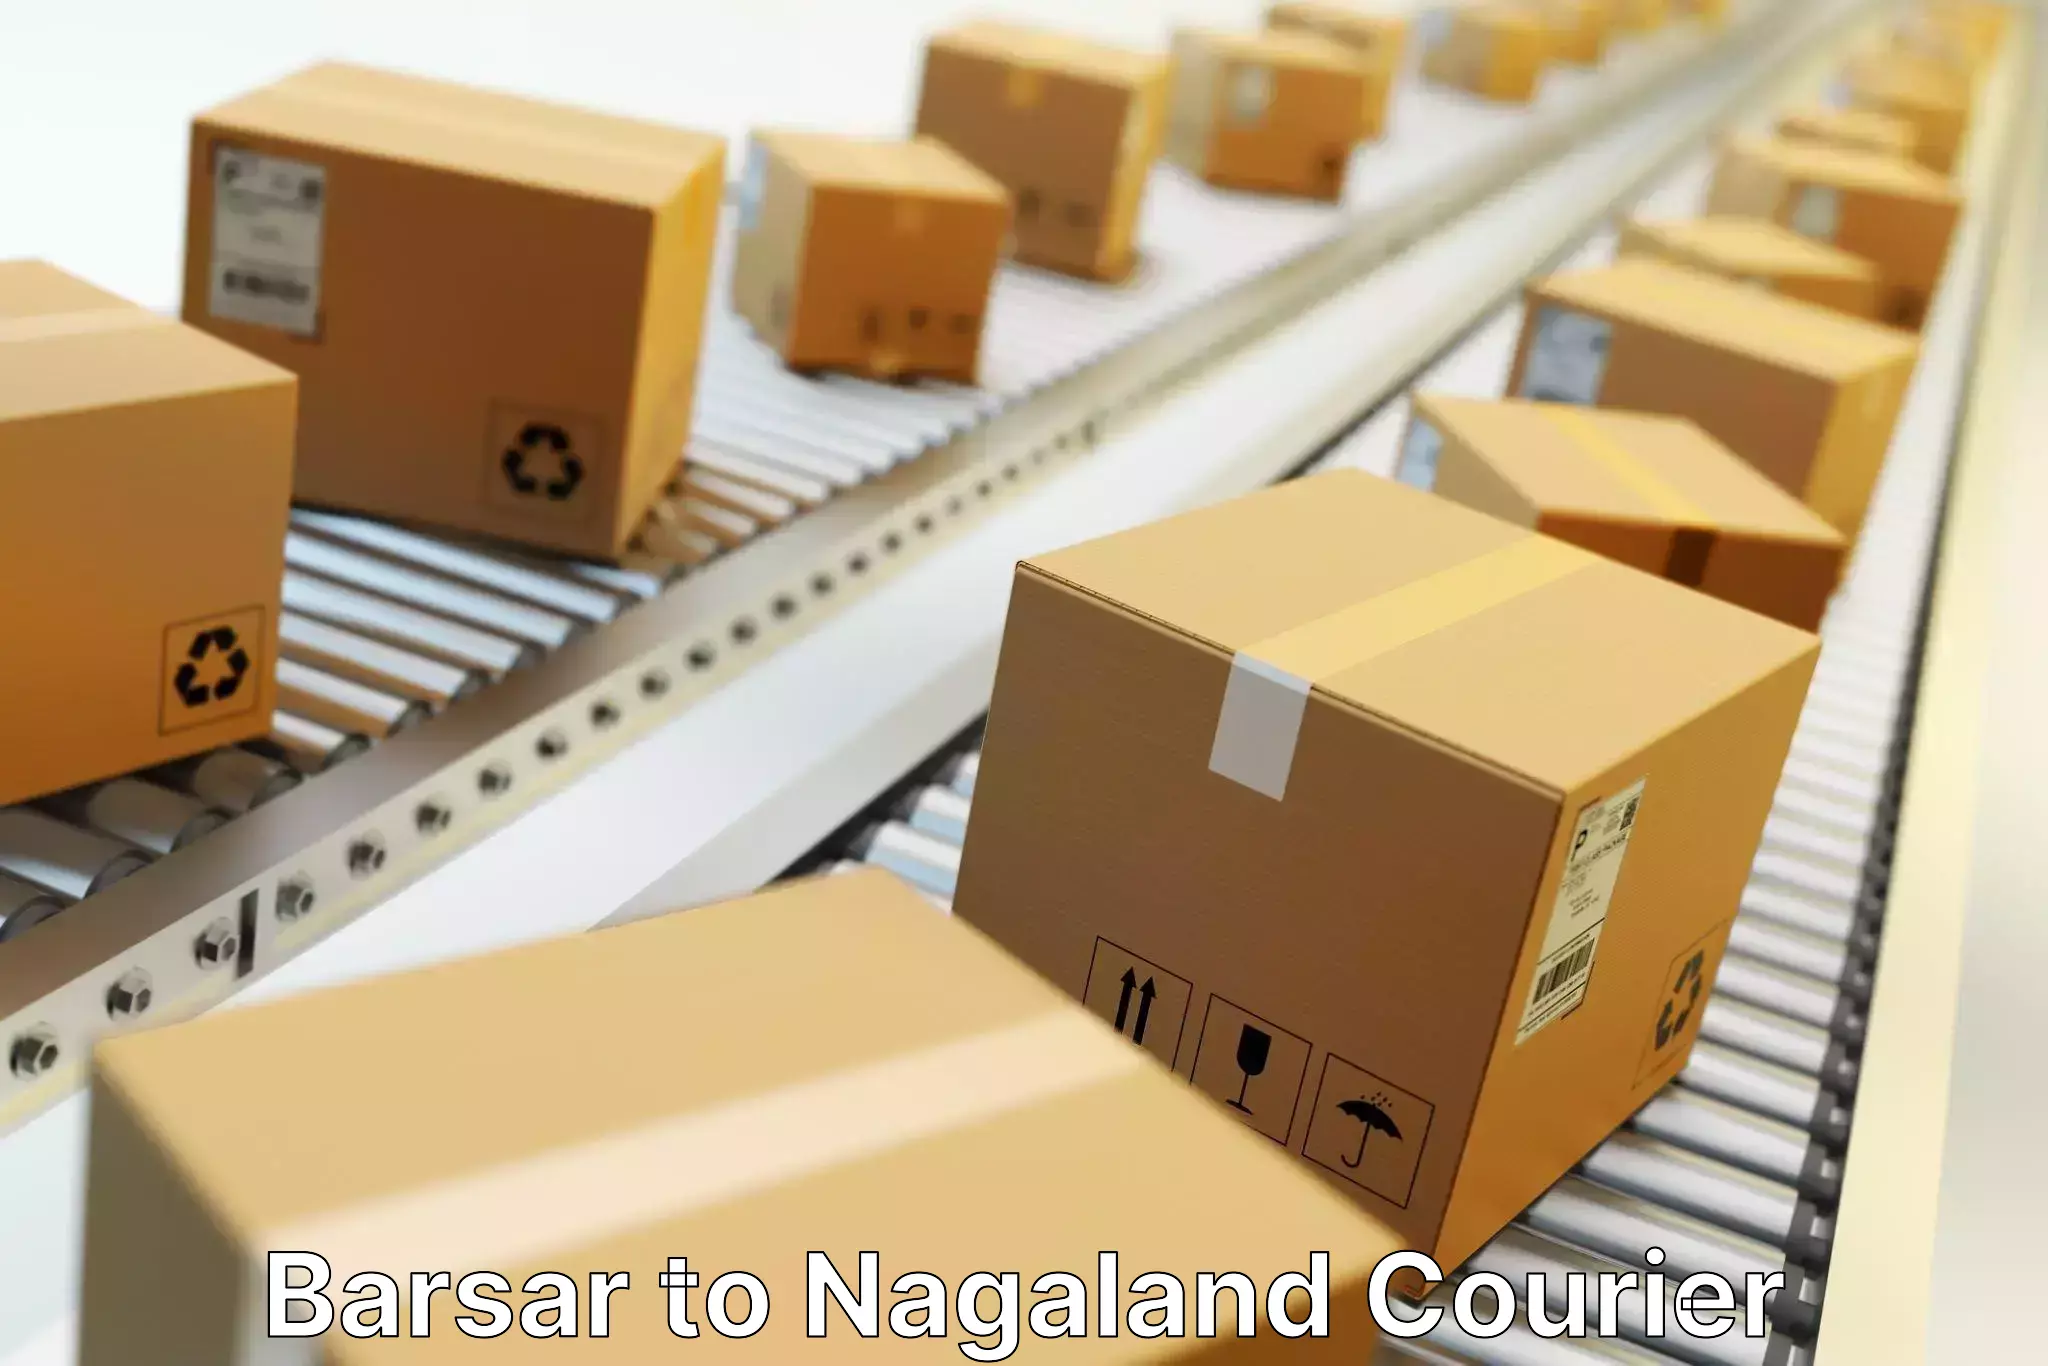 Global shipping solutions in Barsar to Nagaland